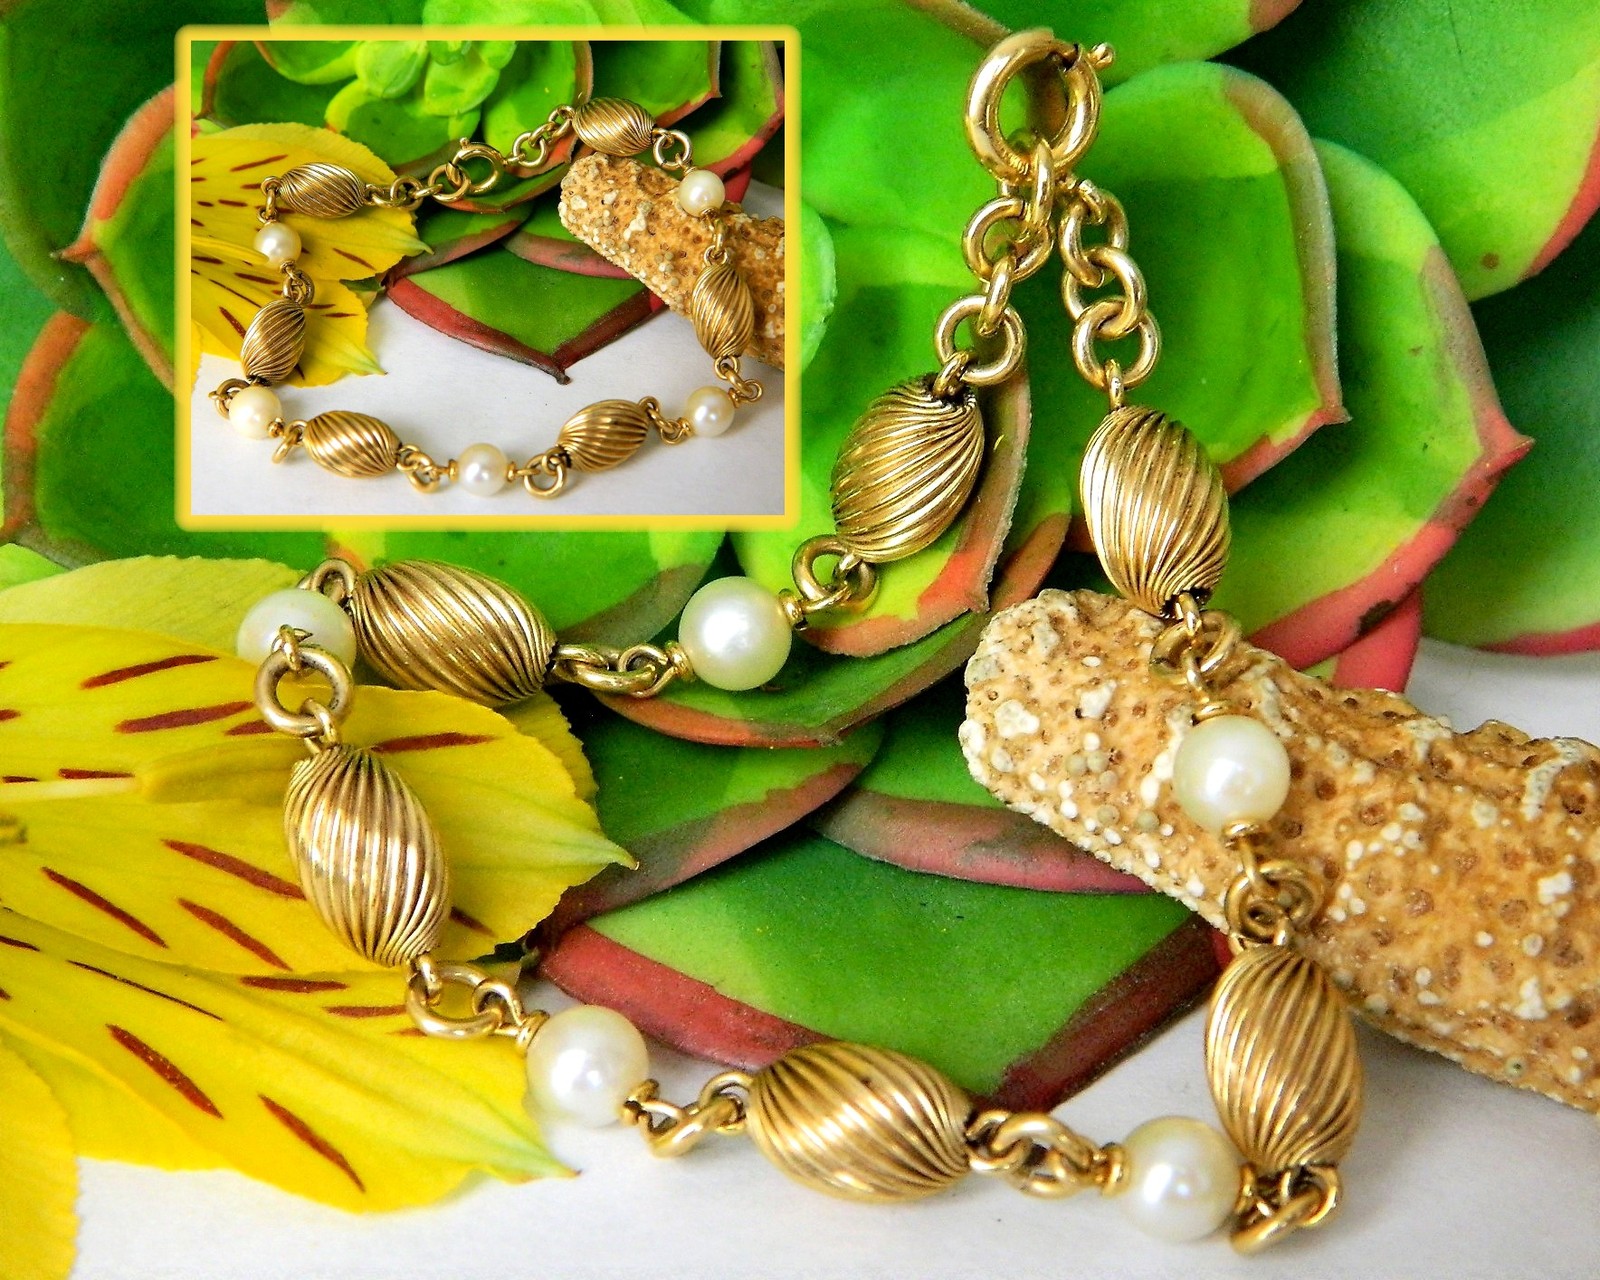 Primary image for Vintage Gold Filled Beads Pearls Bracelet Signed Carl Art 1/20 12K GF